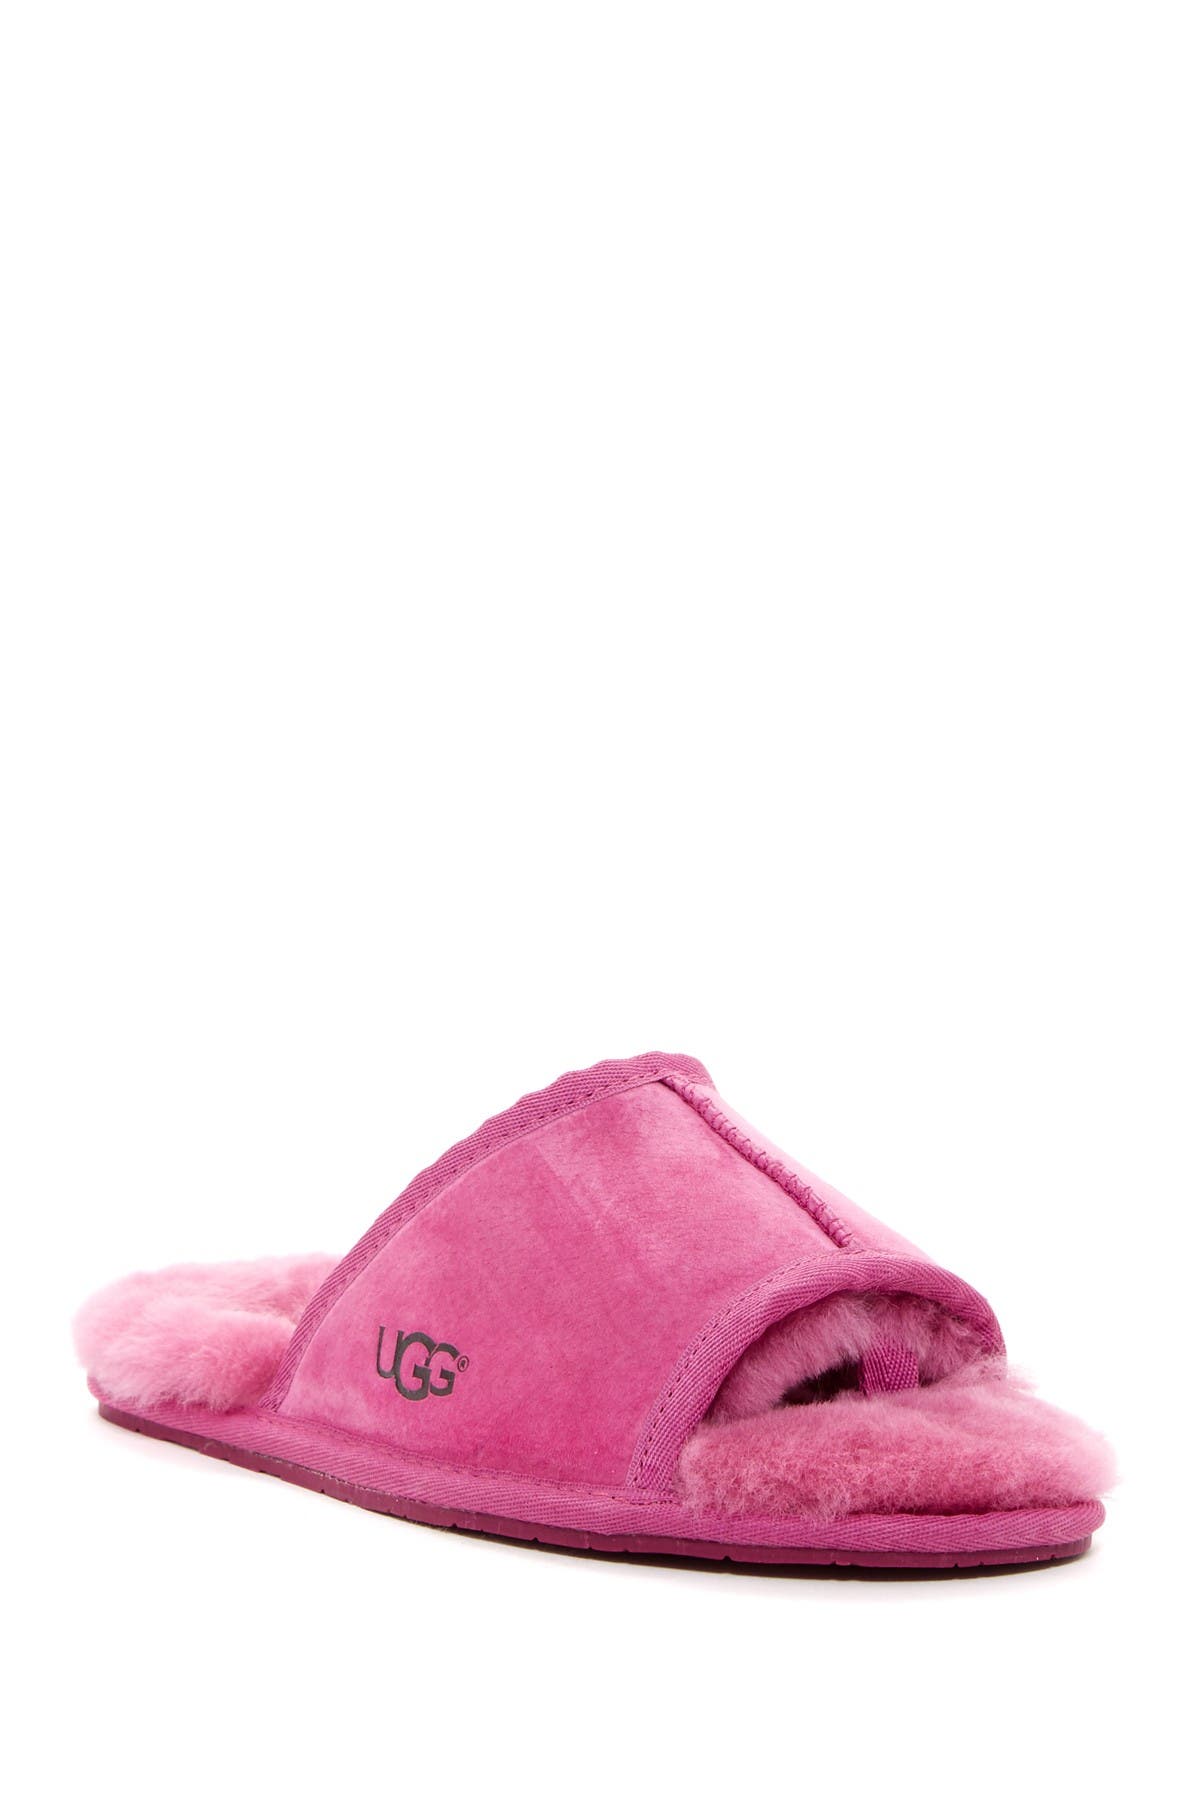 open toe ugg slippers women